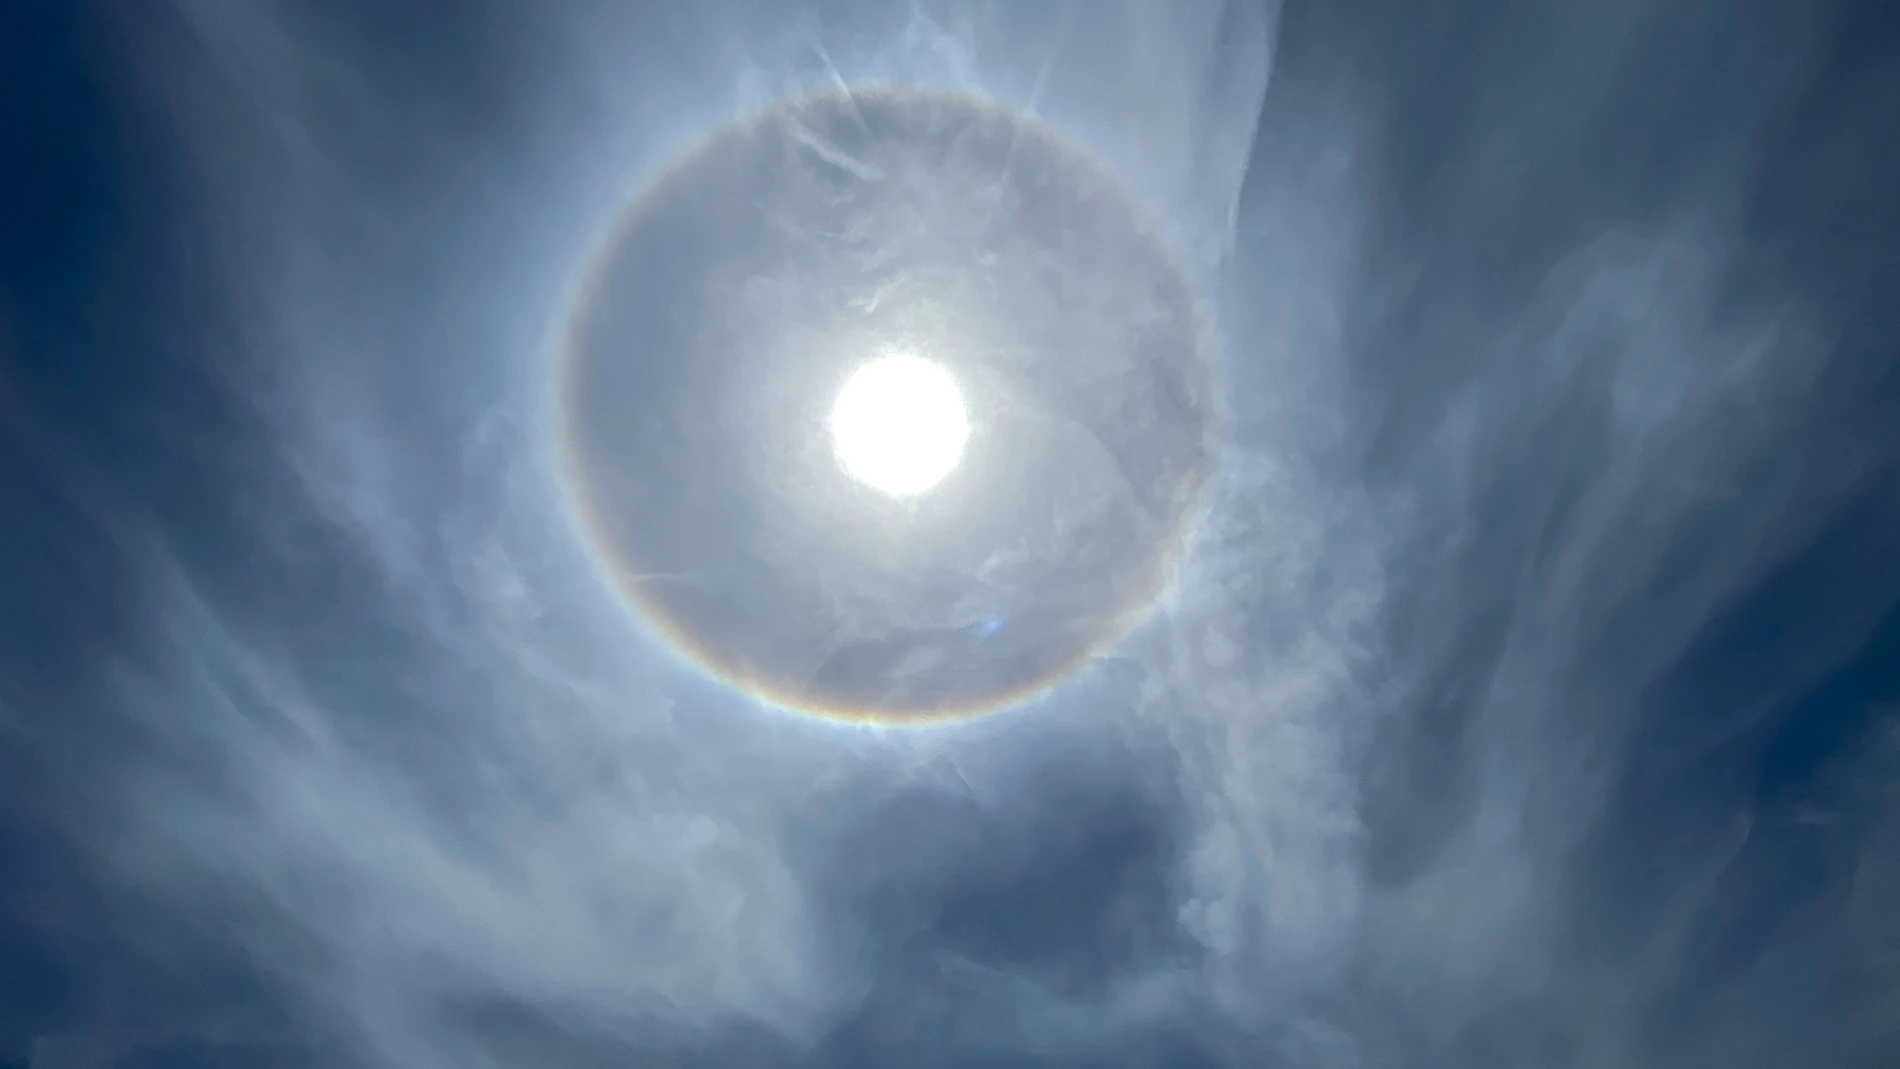 Detalle del halo solar producido por la luz del sol que atraviesa diminutos cristales de hielo que se encuentran suspendidos en la parte alta de la atmósfera, este viernes en Teruel.